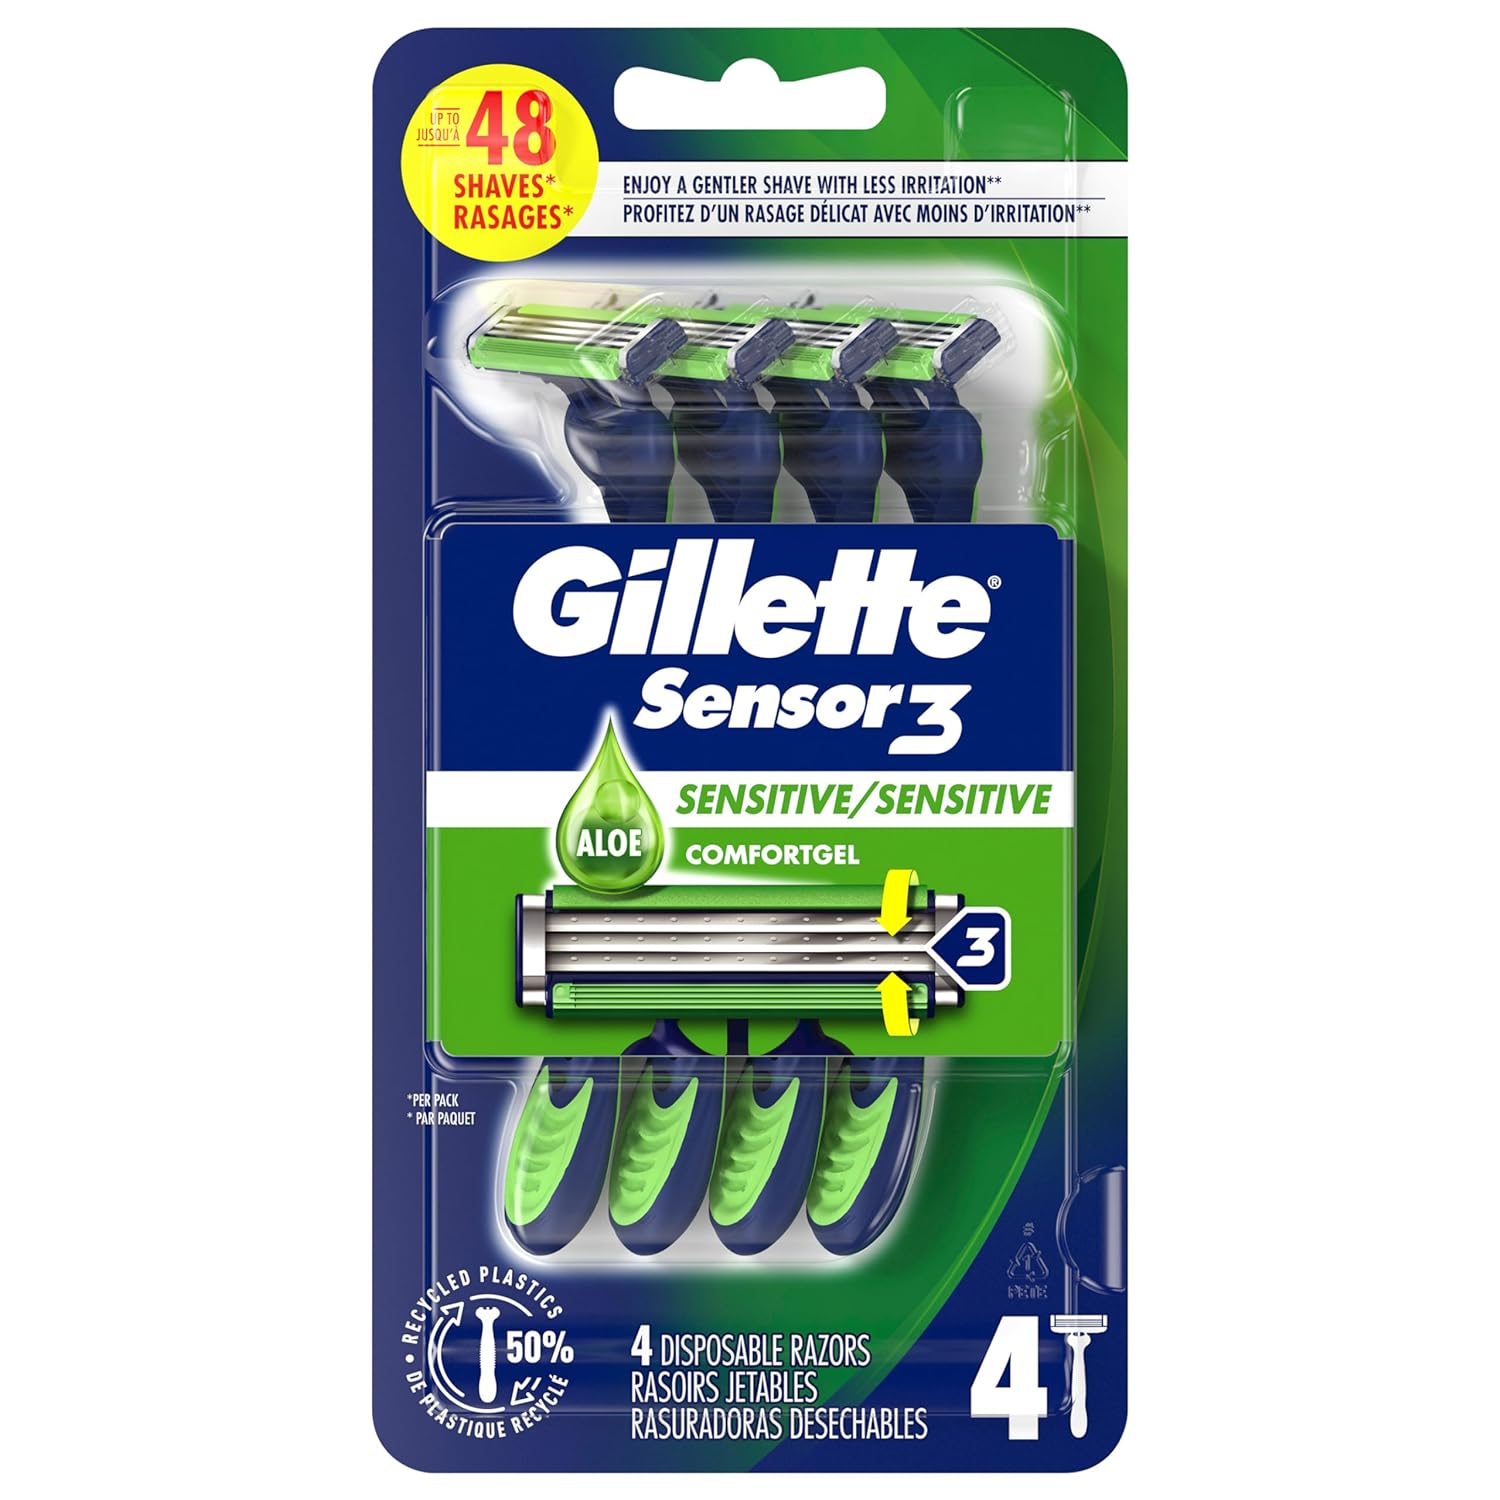 $3.64 w/ S&S: 4-Count Gillette Sensor3 Sensitive Men's Disposable Razor @ Amazon